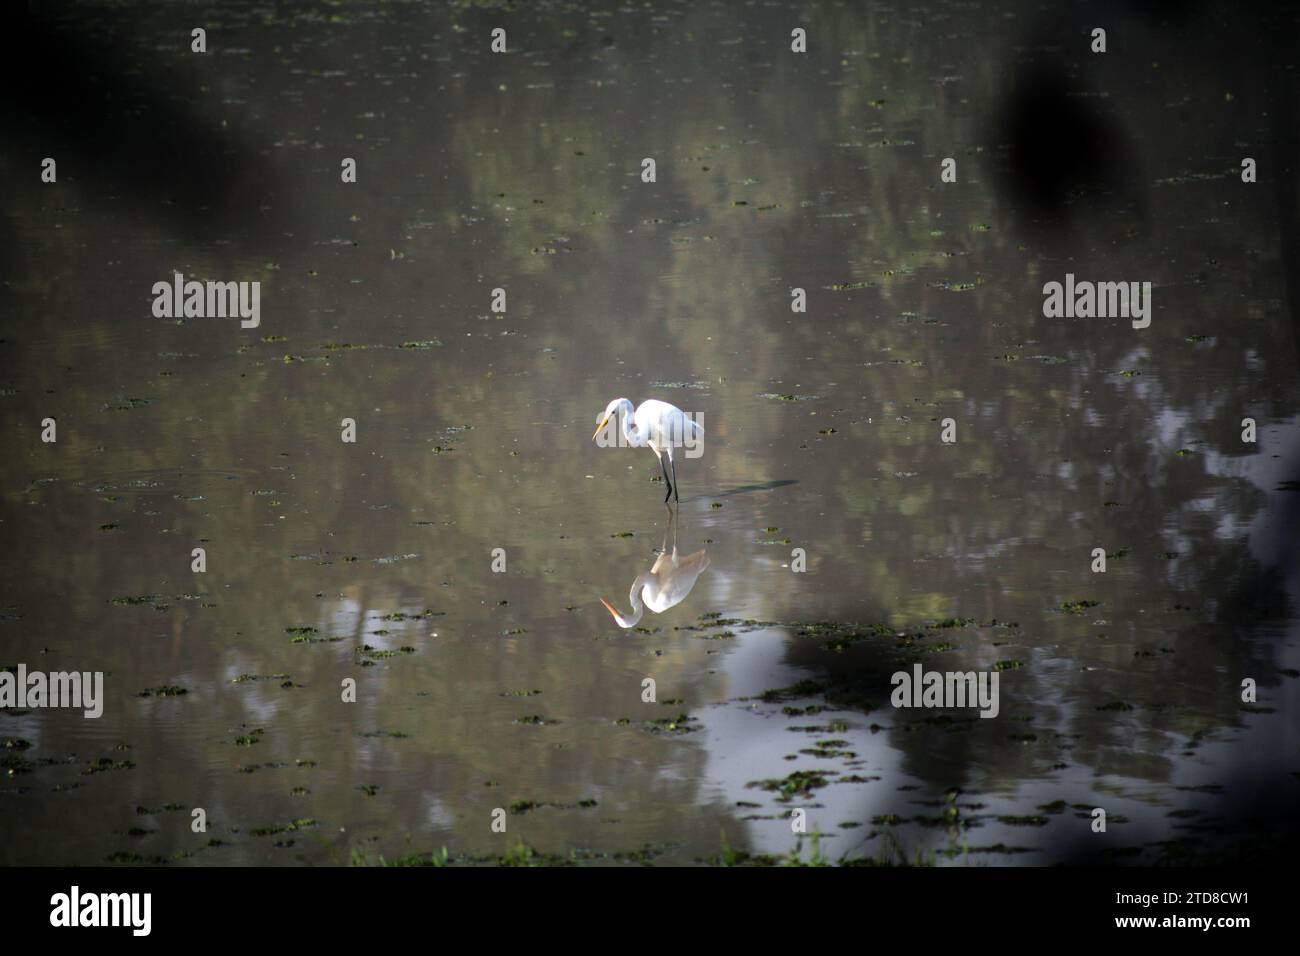 Bangladesh narayanganj janvier 01,2000.oiseaux de héron blanc au bangladesh.Nazmul islam/alamy Live news Banque D'Images